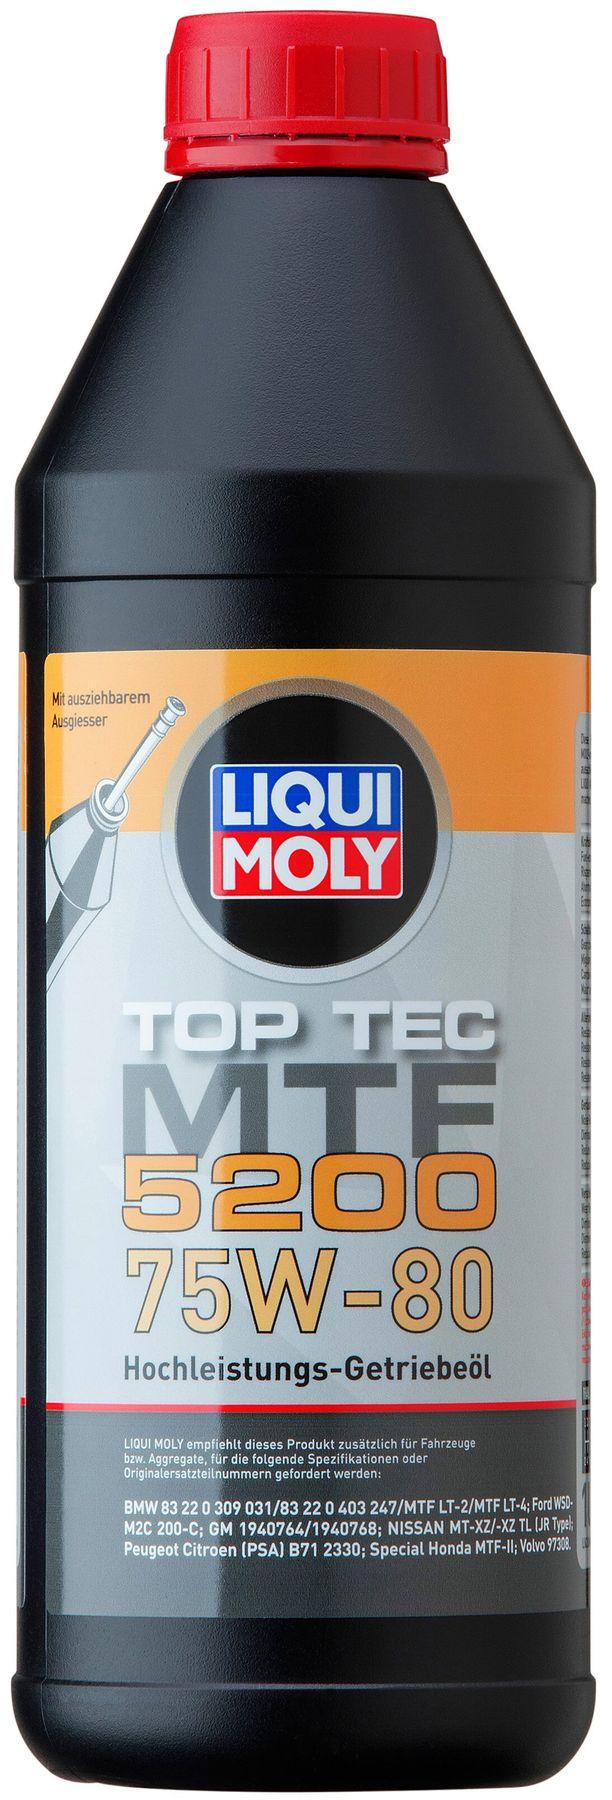 Трансмиссионное масло Liqui Moly Top Tec MTF 5200 75W-80, 1 литр (20845)